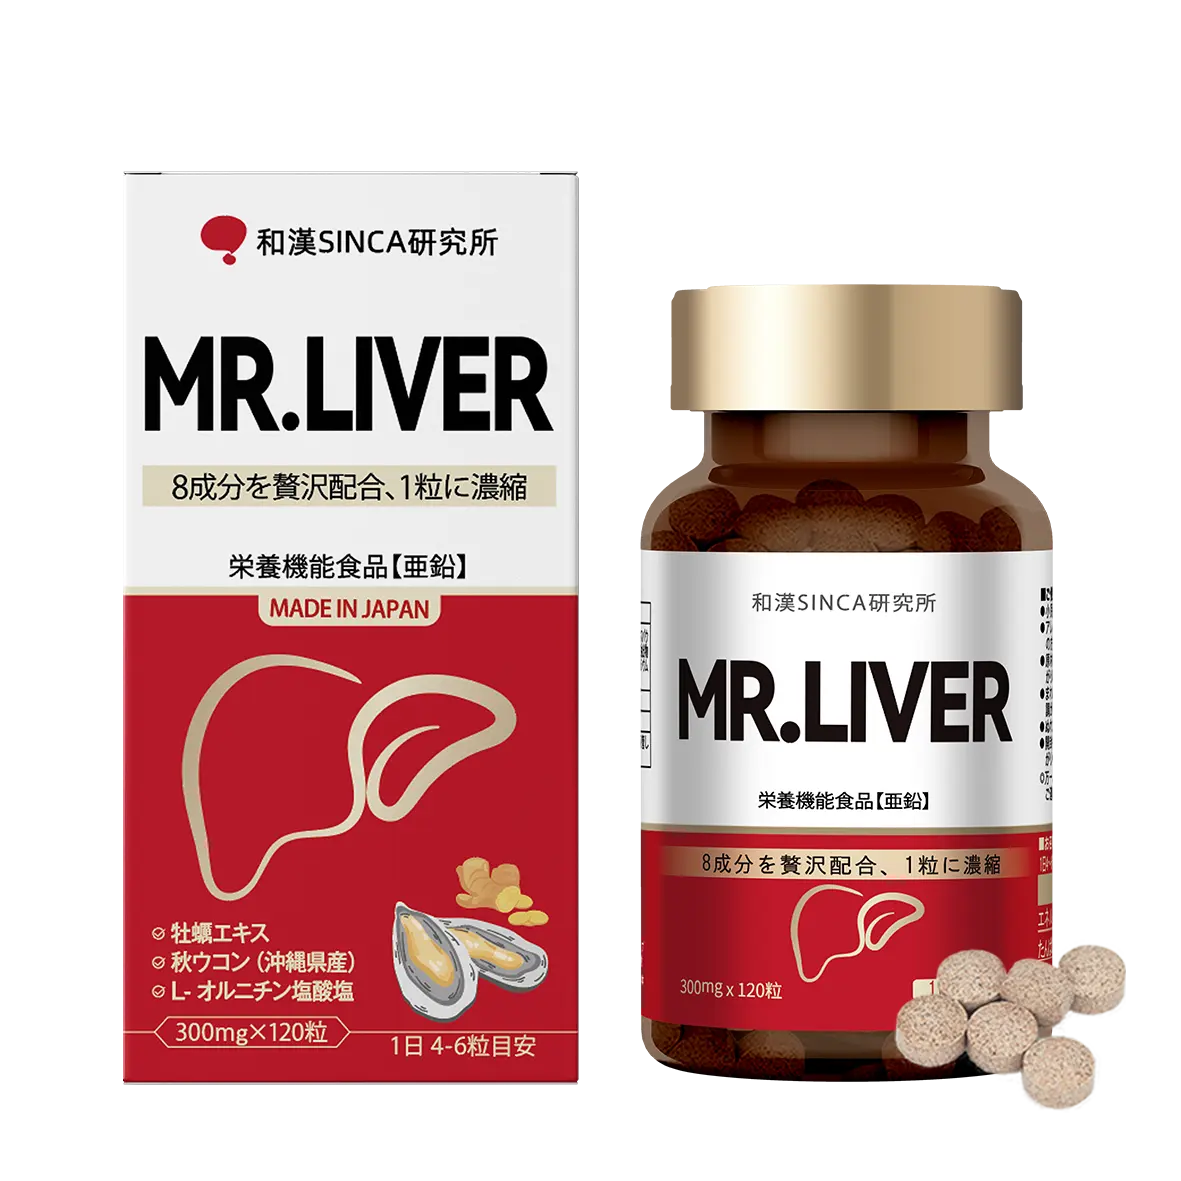 MR.LIVER liver care liver detox hangover tablets made in Japan